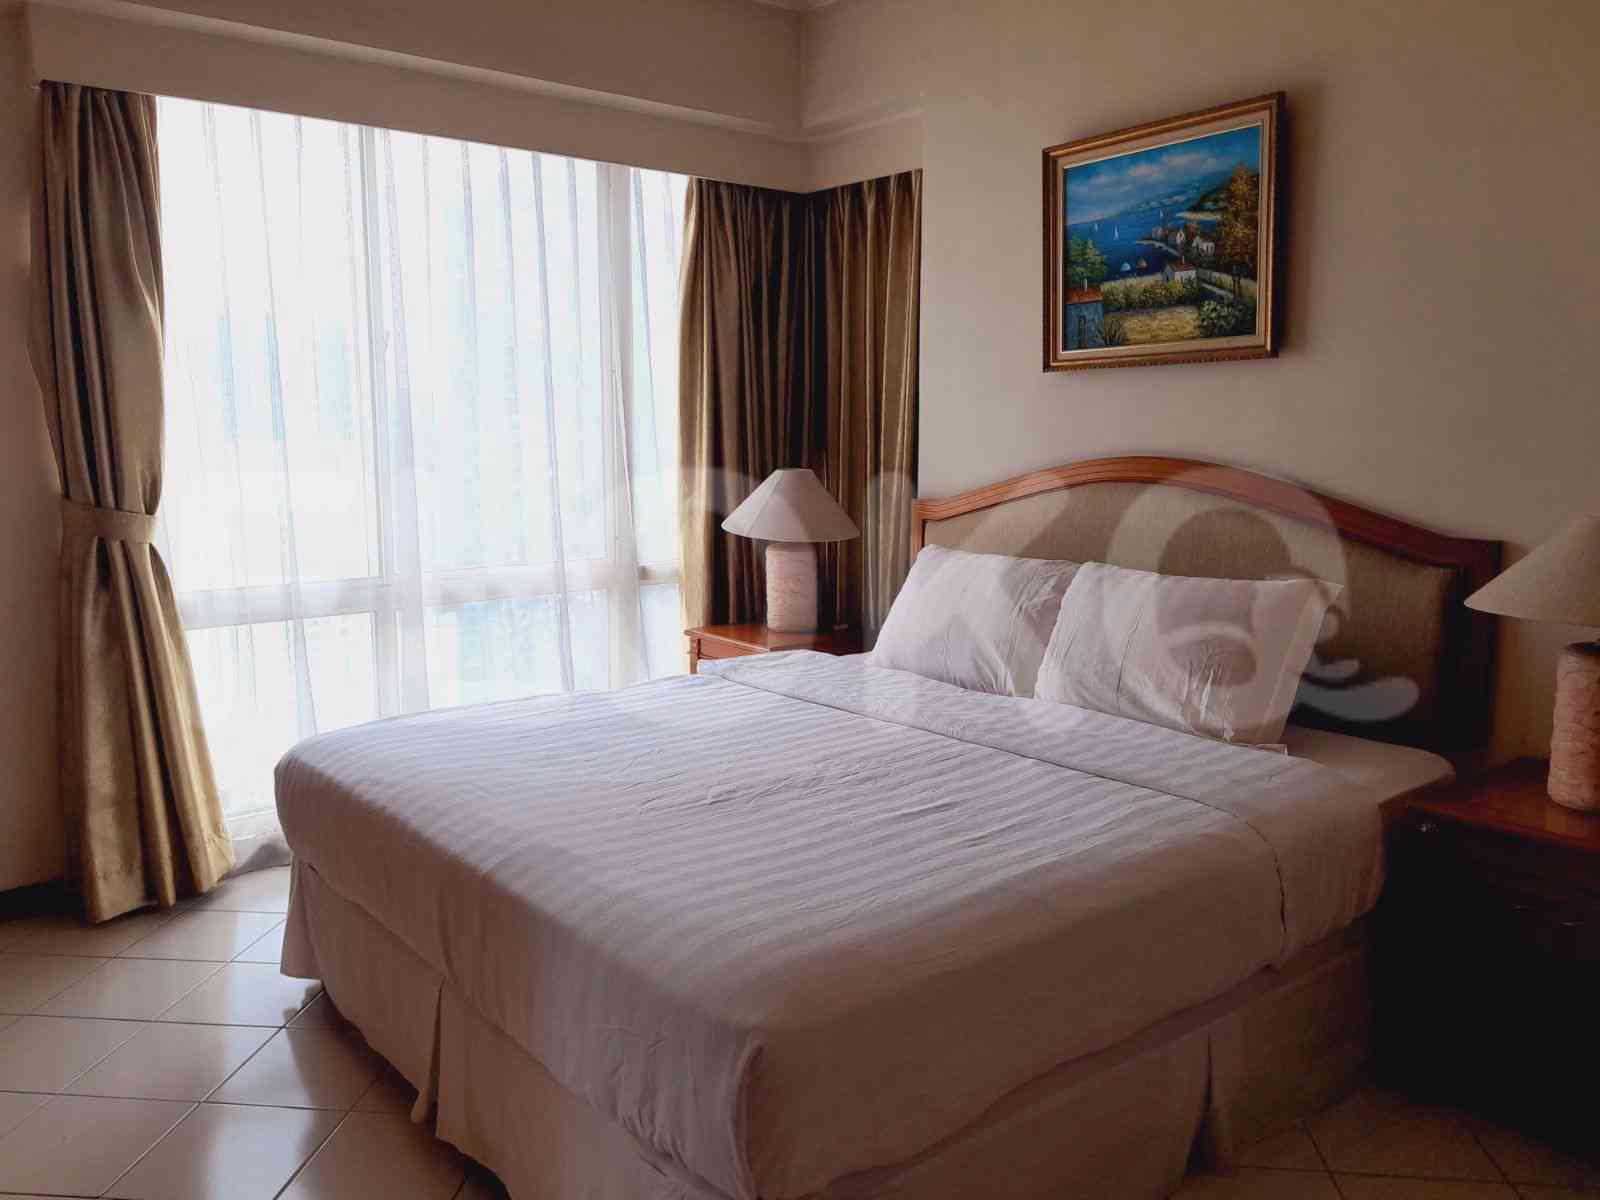 2 Bedroom on 35th Floor for Rent in Puri Casablanca - fte0f6 2